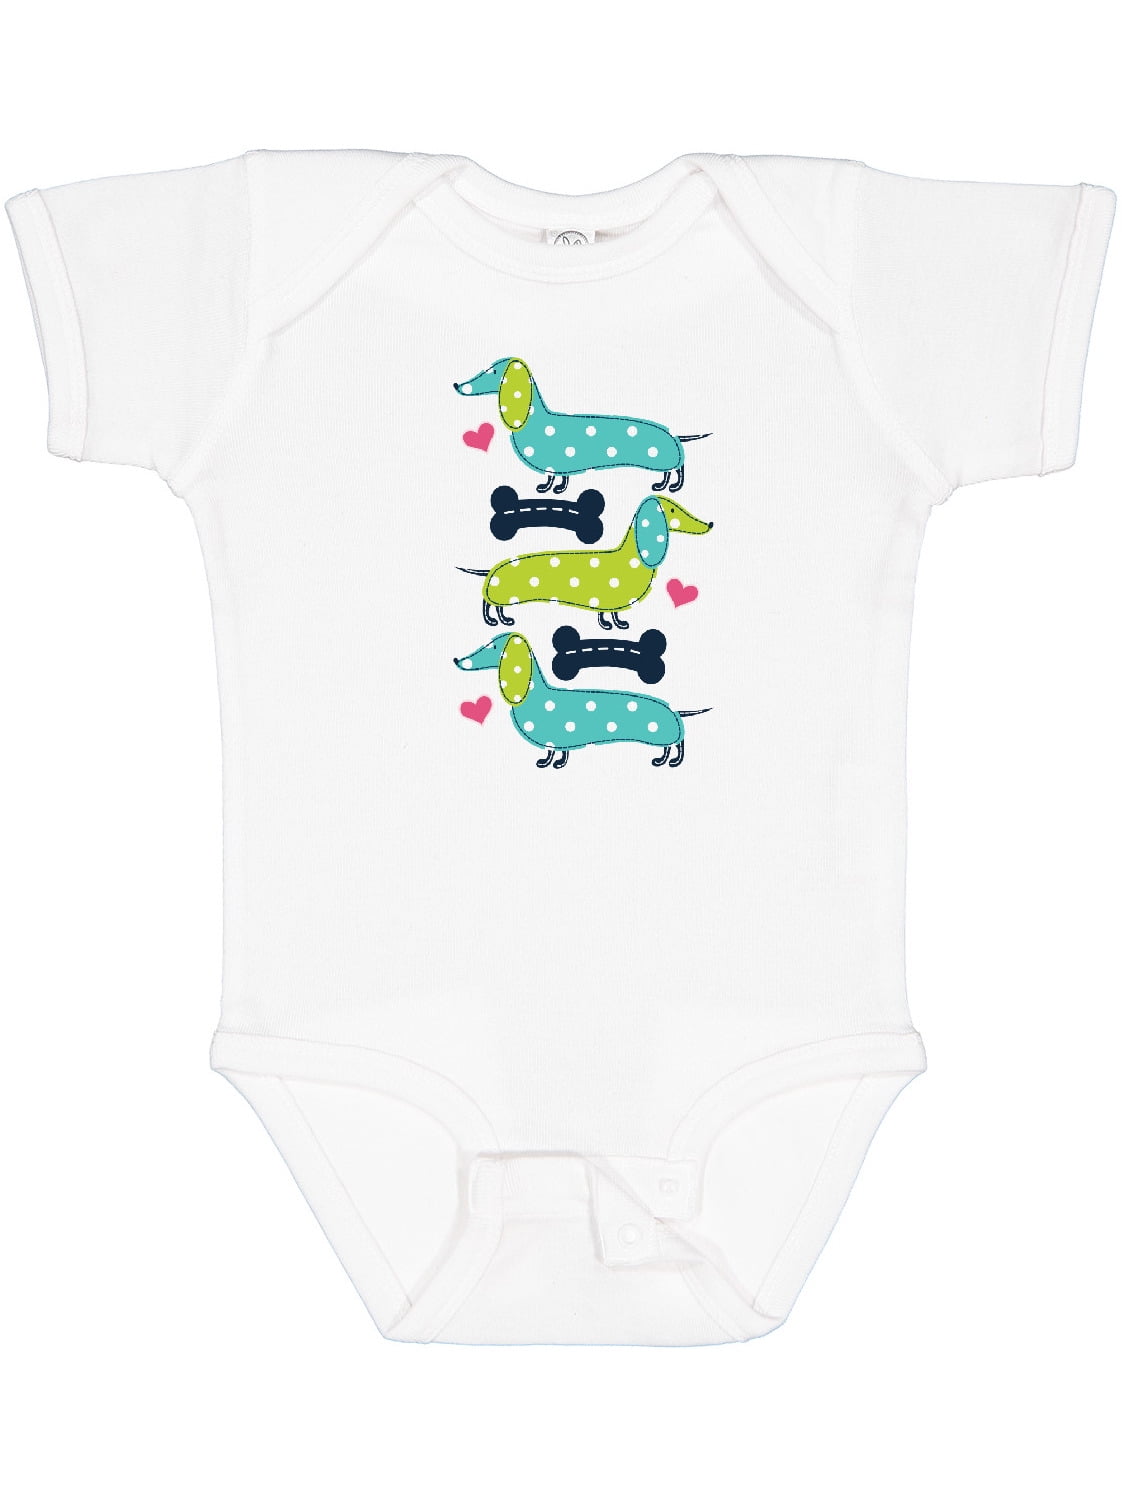 Nouveau Bébé Unisexe Babygrow 9-12 mois Toddler Boy Girl Sleepsuit momie ext Boutique 